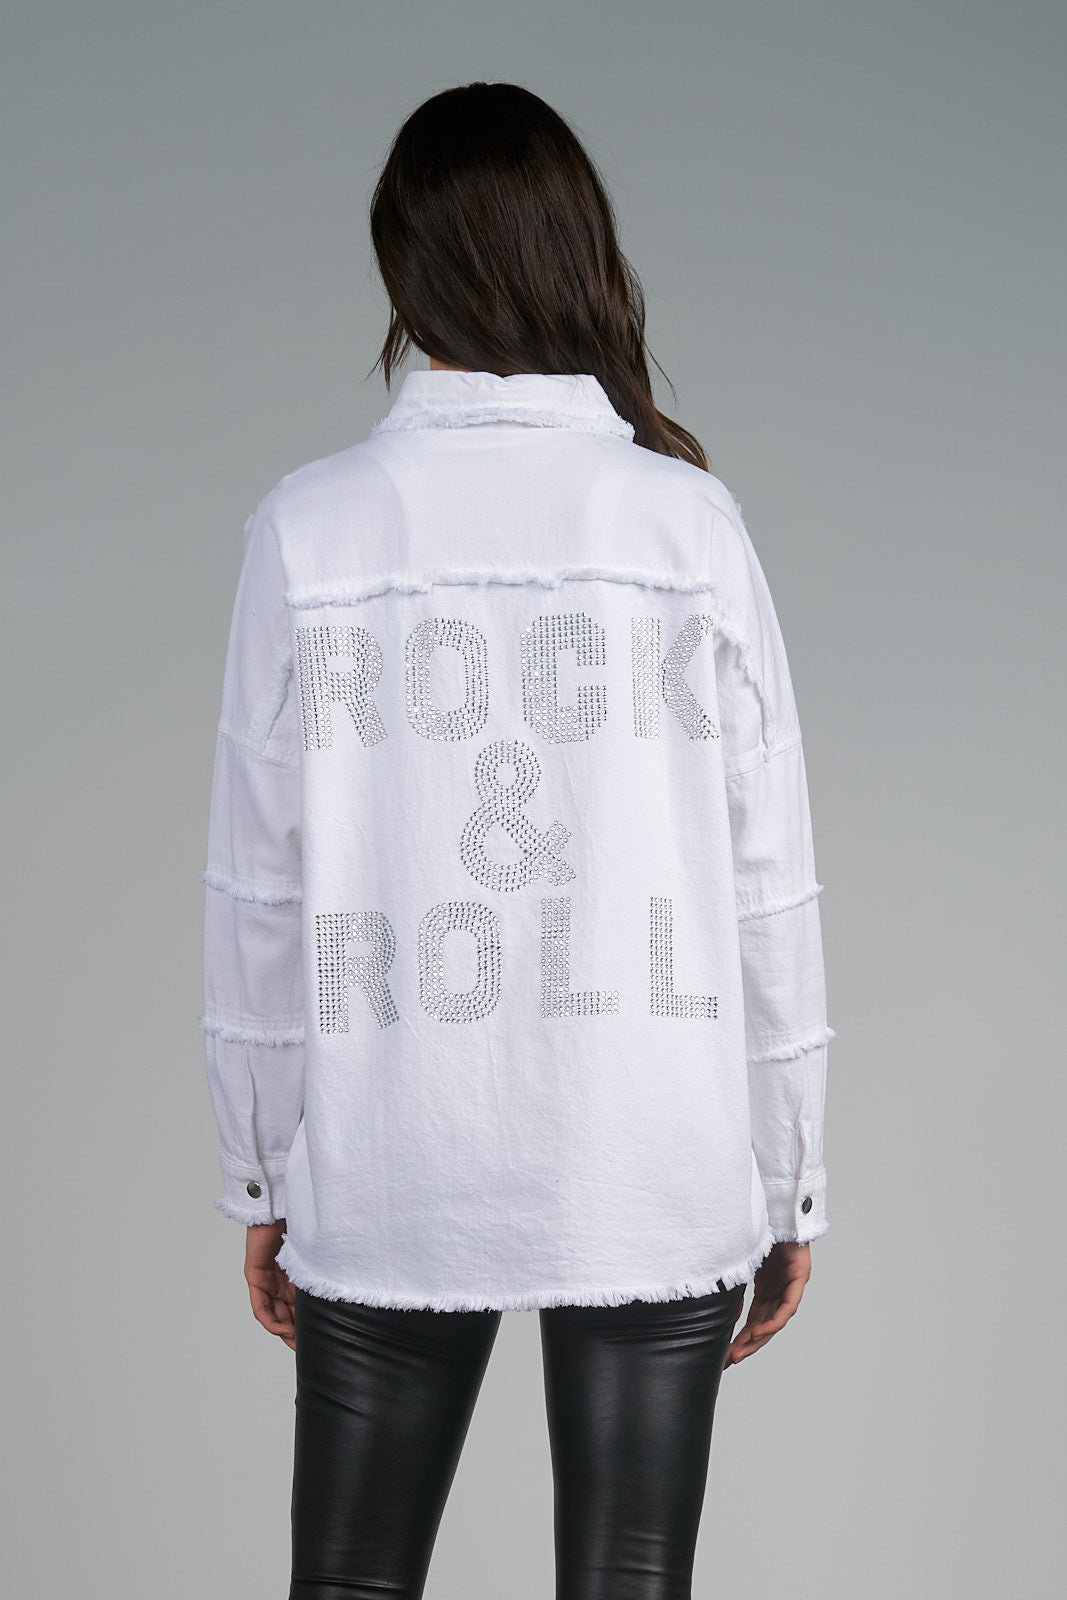 ROCK & ROLL DALLAS JACKET - WINTER WHITE